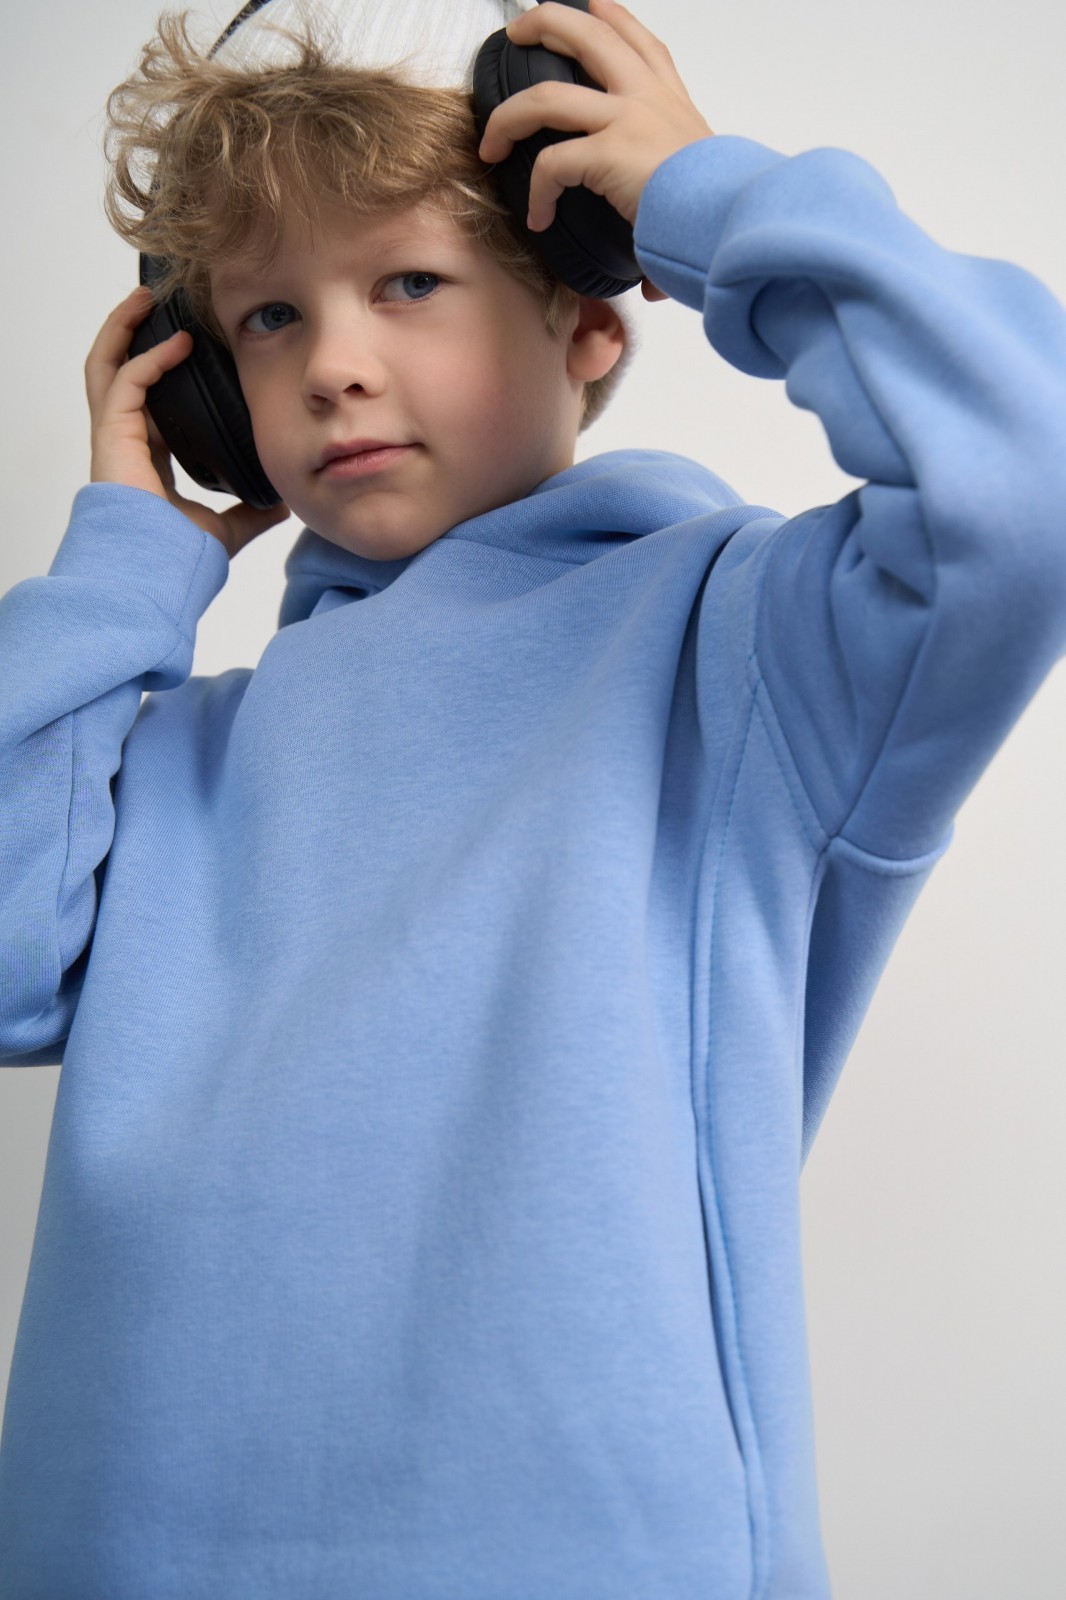 Дитячий спортивний костюм для хлопчика колір світло-блакитний р.128 444154